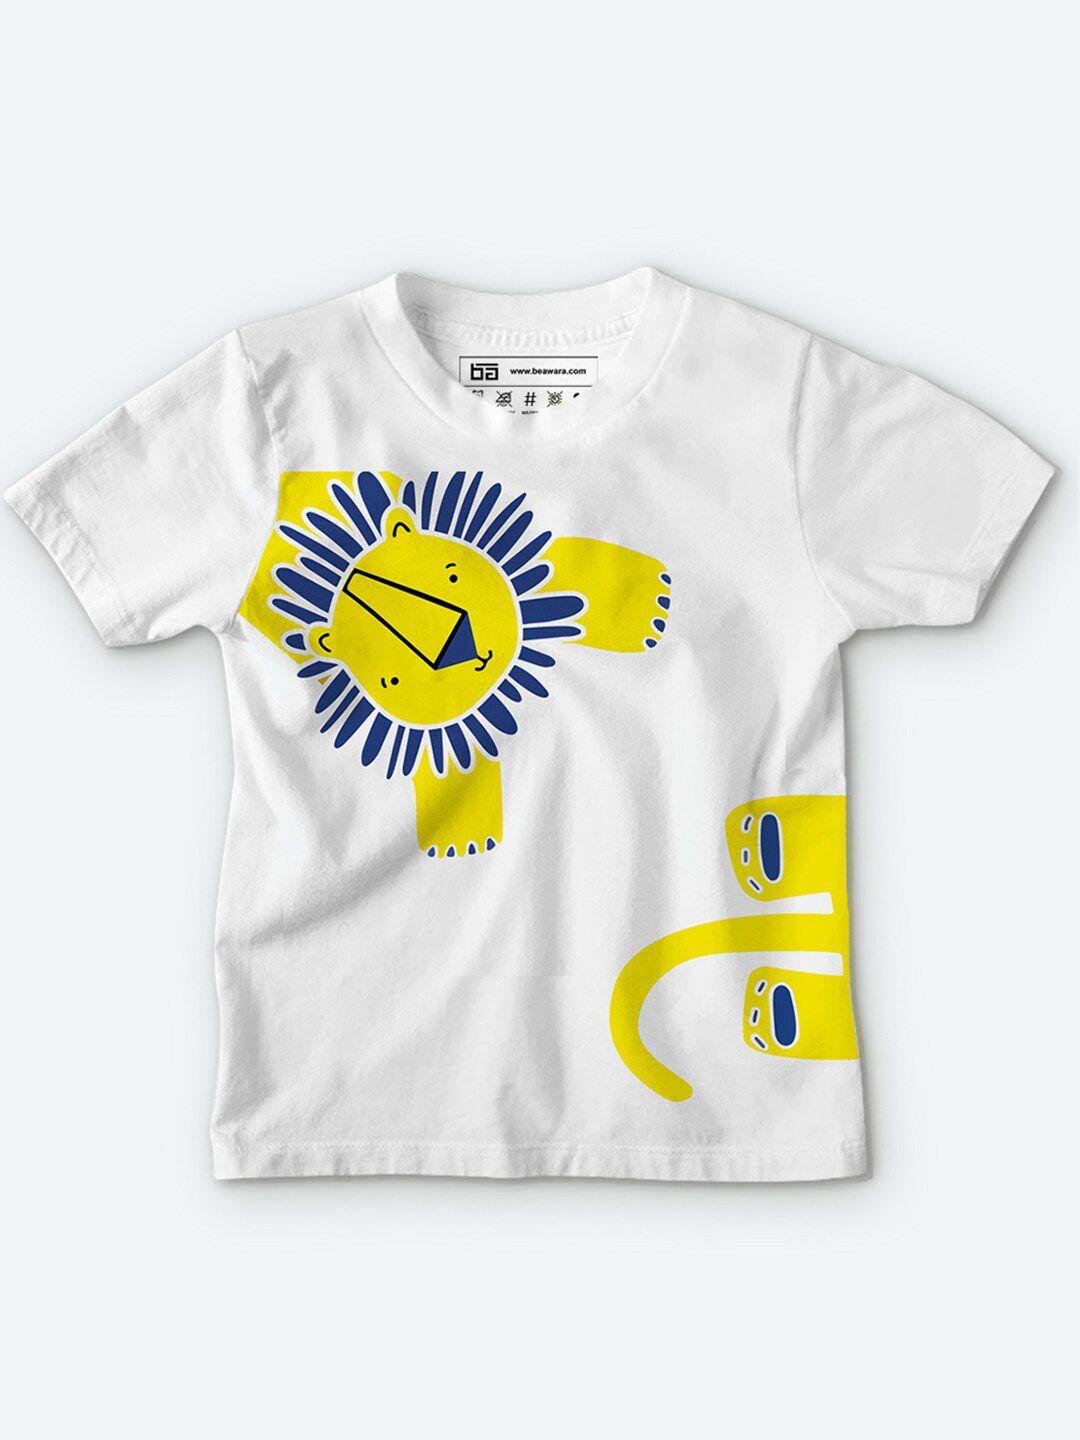 be awara kids white & yellow printed cotton t-shirt